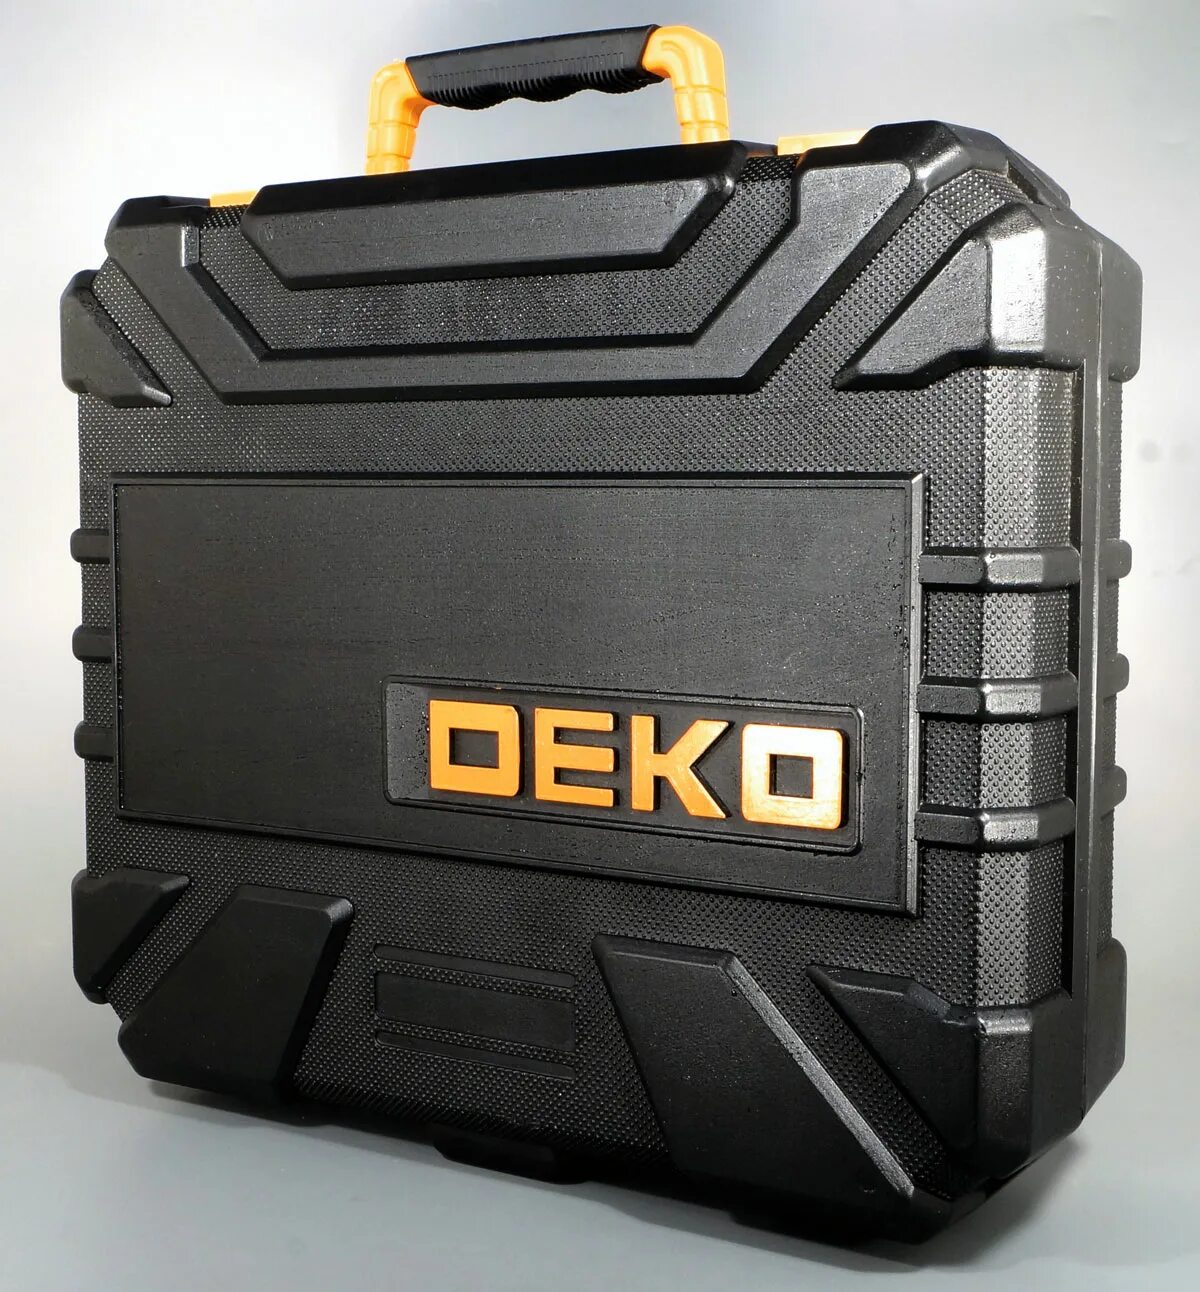 Deko 20 6. Dkcd12-li. Аккумулятор 20 v deco для Deko dkag20-125. Deko.